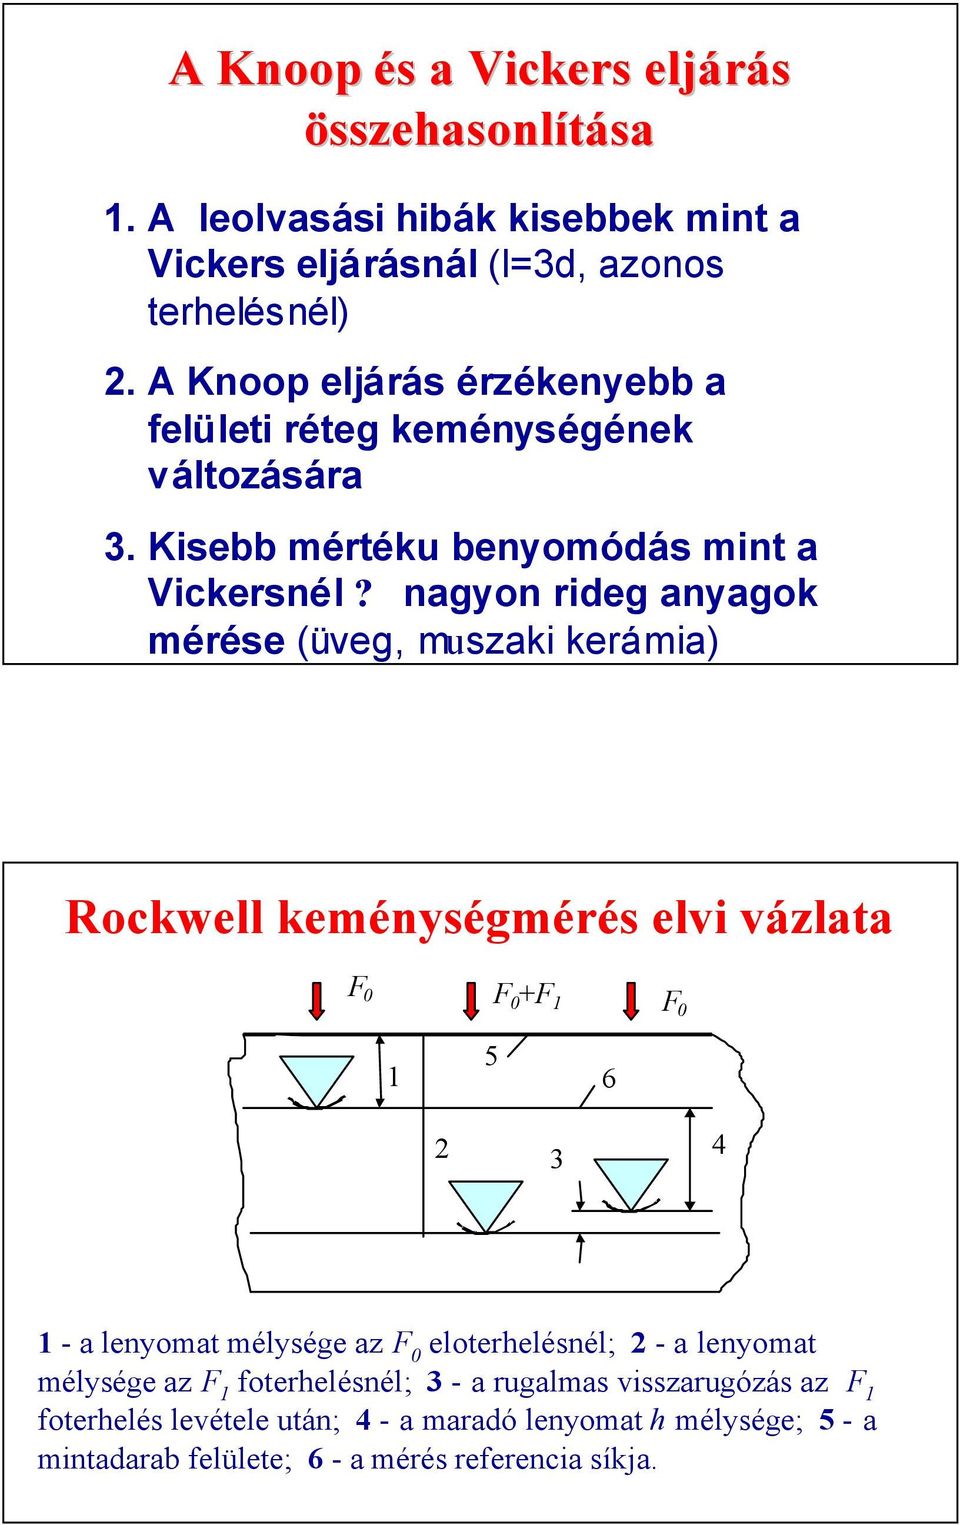 nagyon rideg anyagok mérése (üveg, muszaki kerámia) Rockwell keménységmérés elvi vázlata F F +F 1 F 1 5 6 3 4 1 - a lenyomat mélysége az F